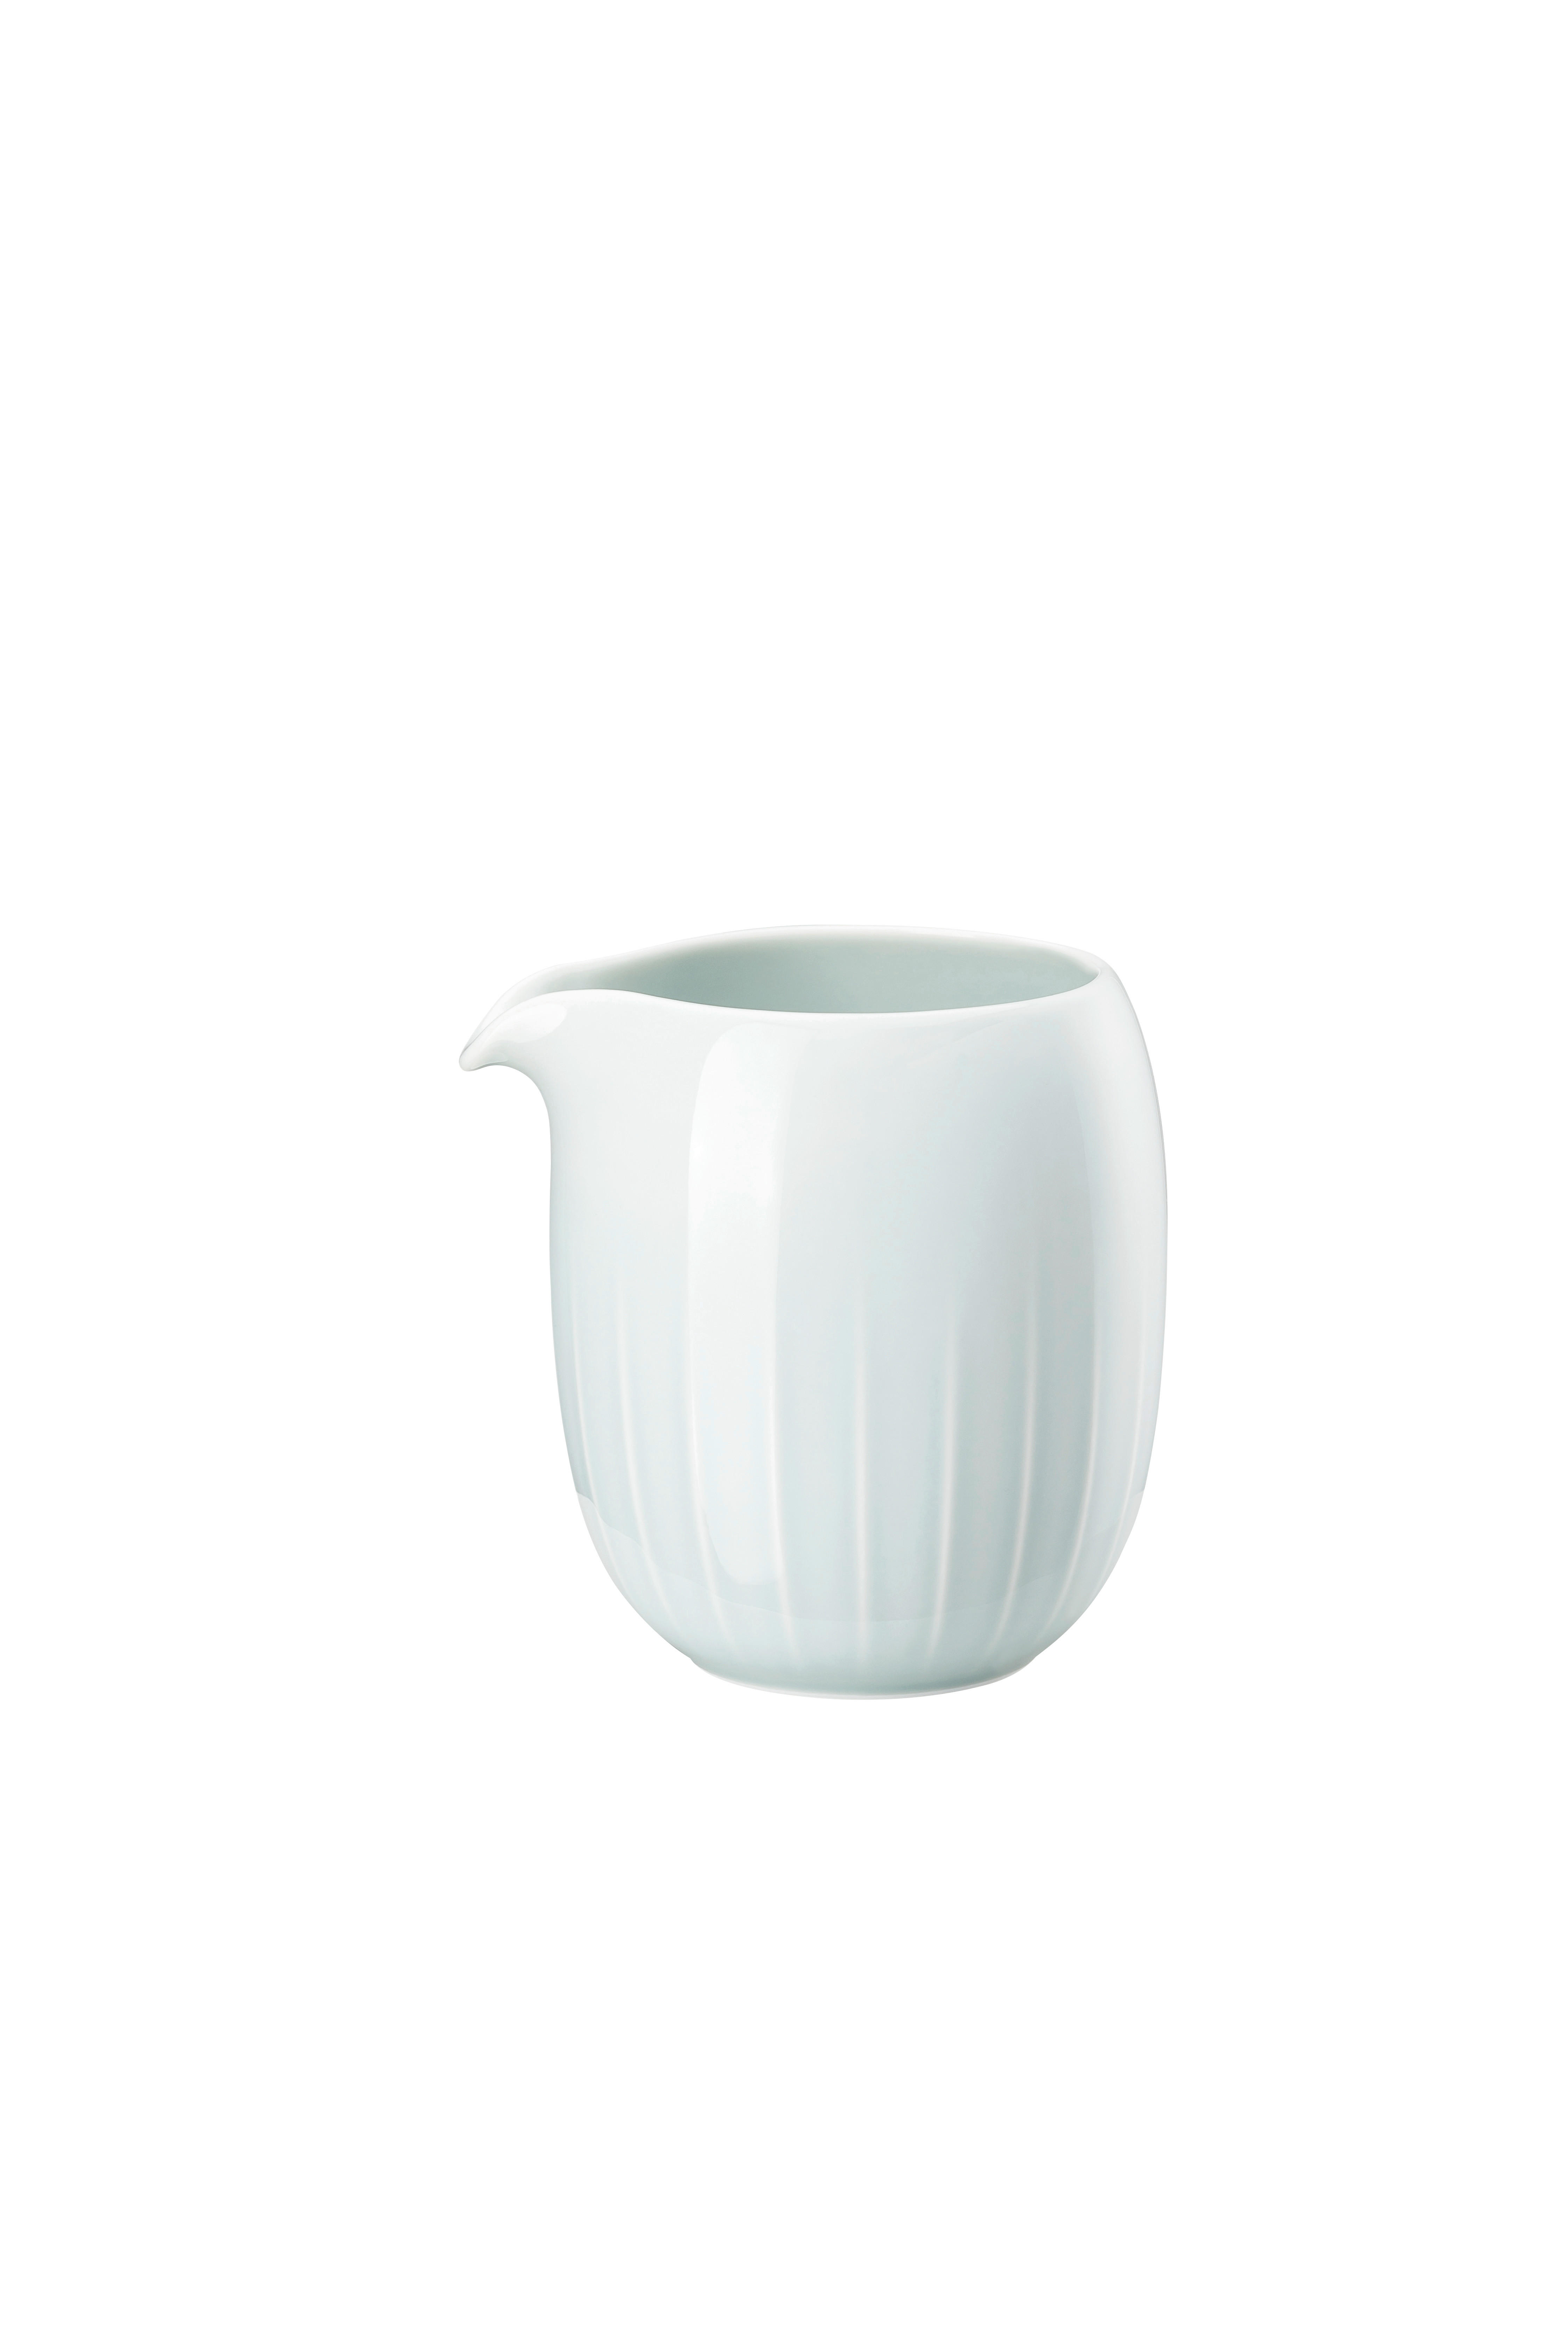 BOKAL ZA MLEKO    0,42 l     - Osnovno, keramika (15/10/10cm) - Rosenthal